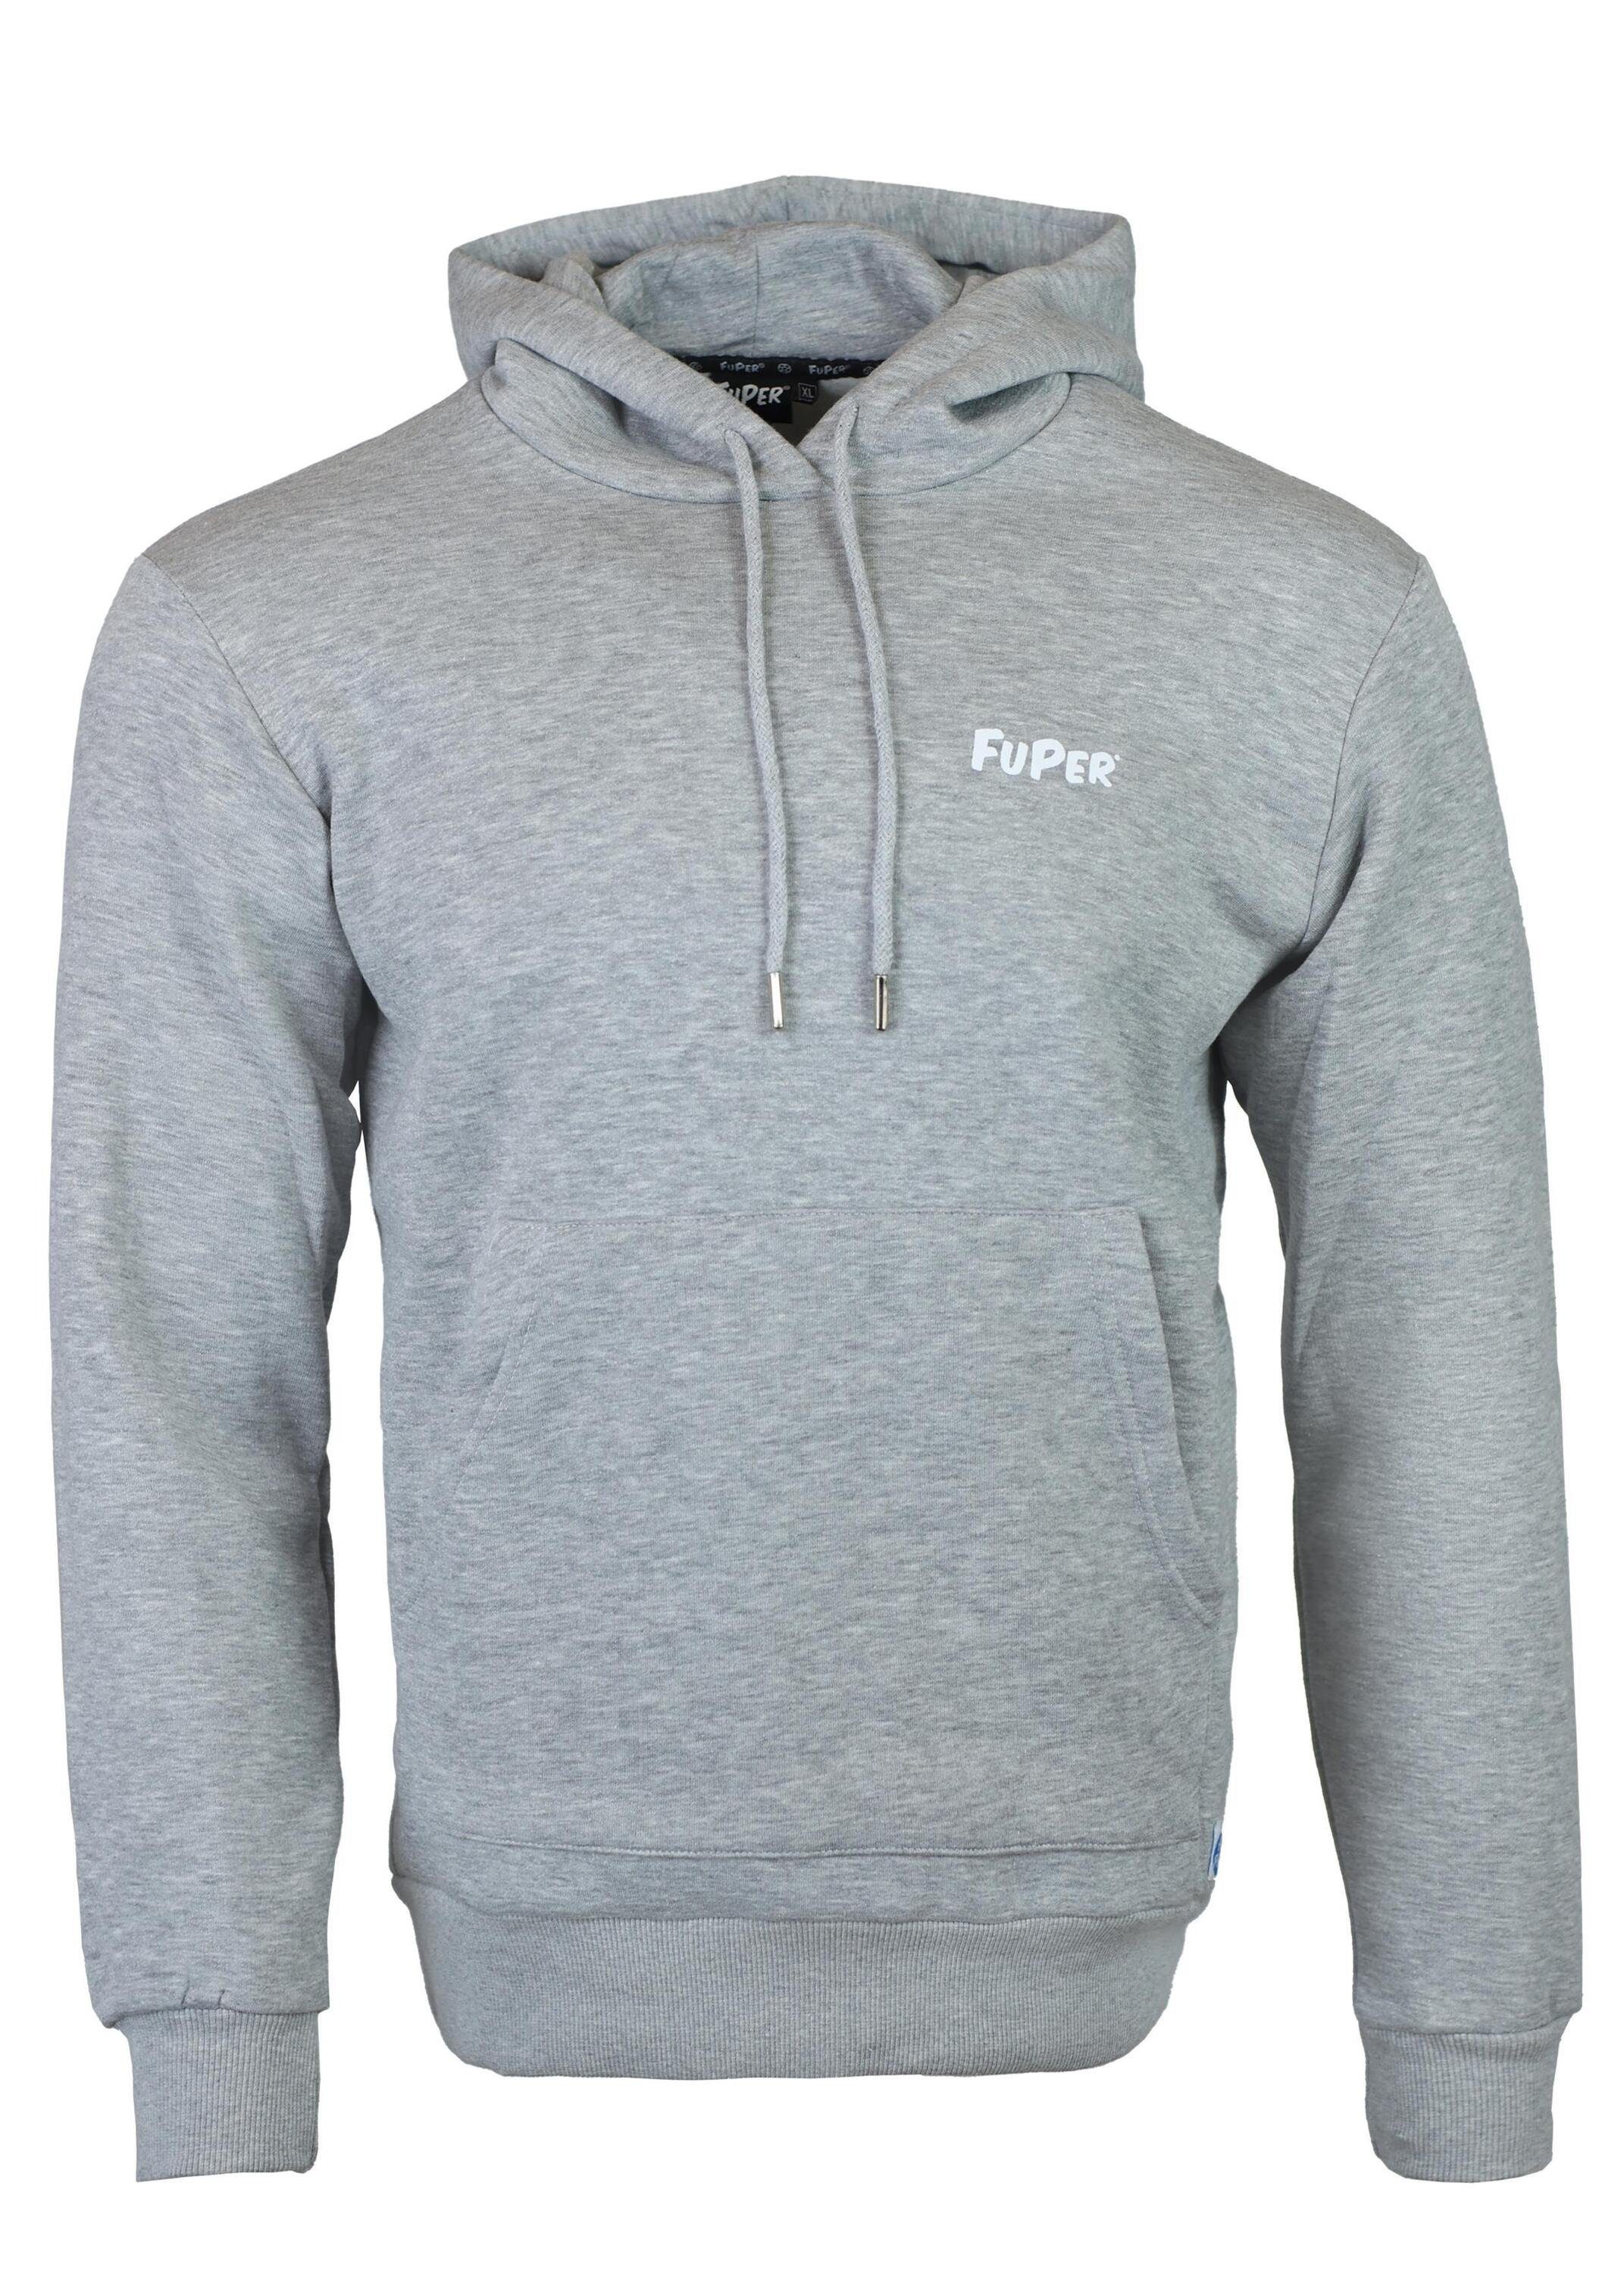 Felix FuPer Lifestyle und Herren, Sport Grey Hoodie für